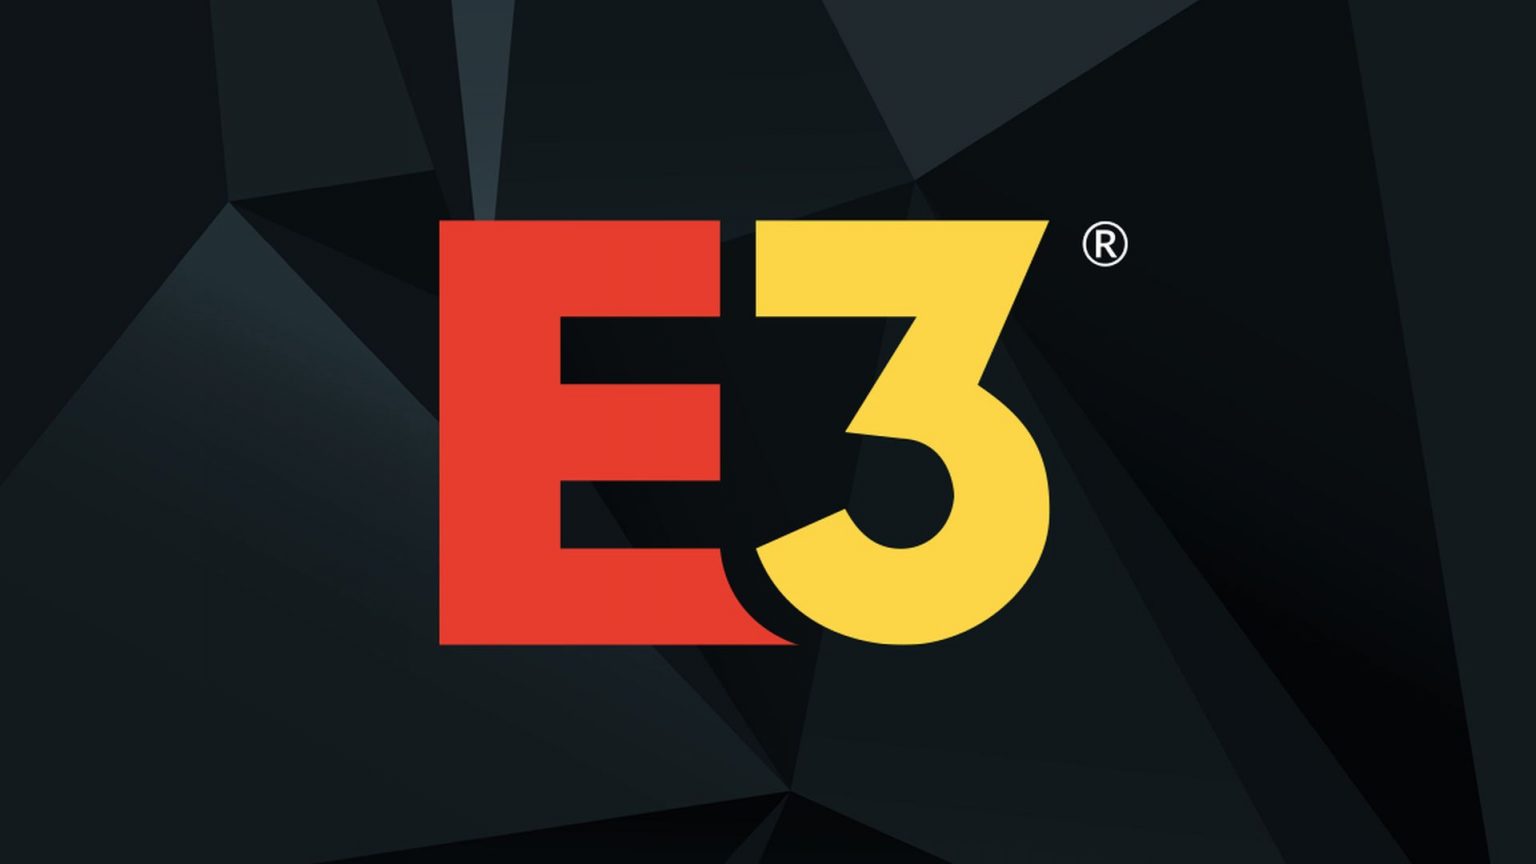 E3 2022 Officially Cancelled